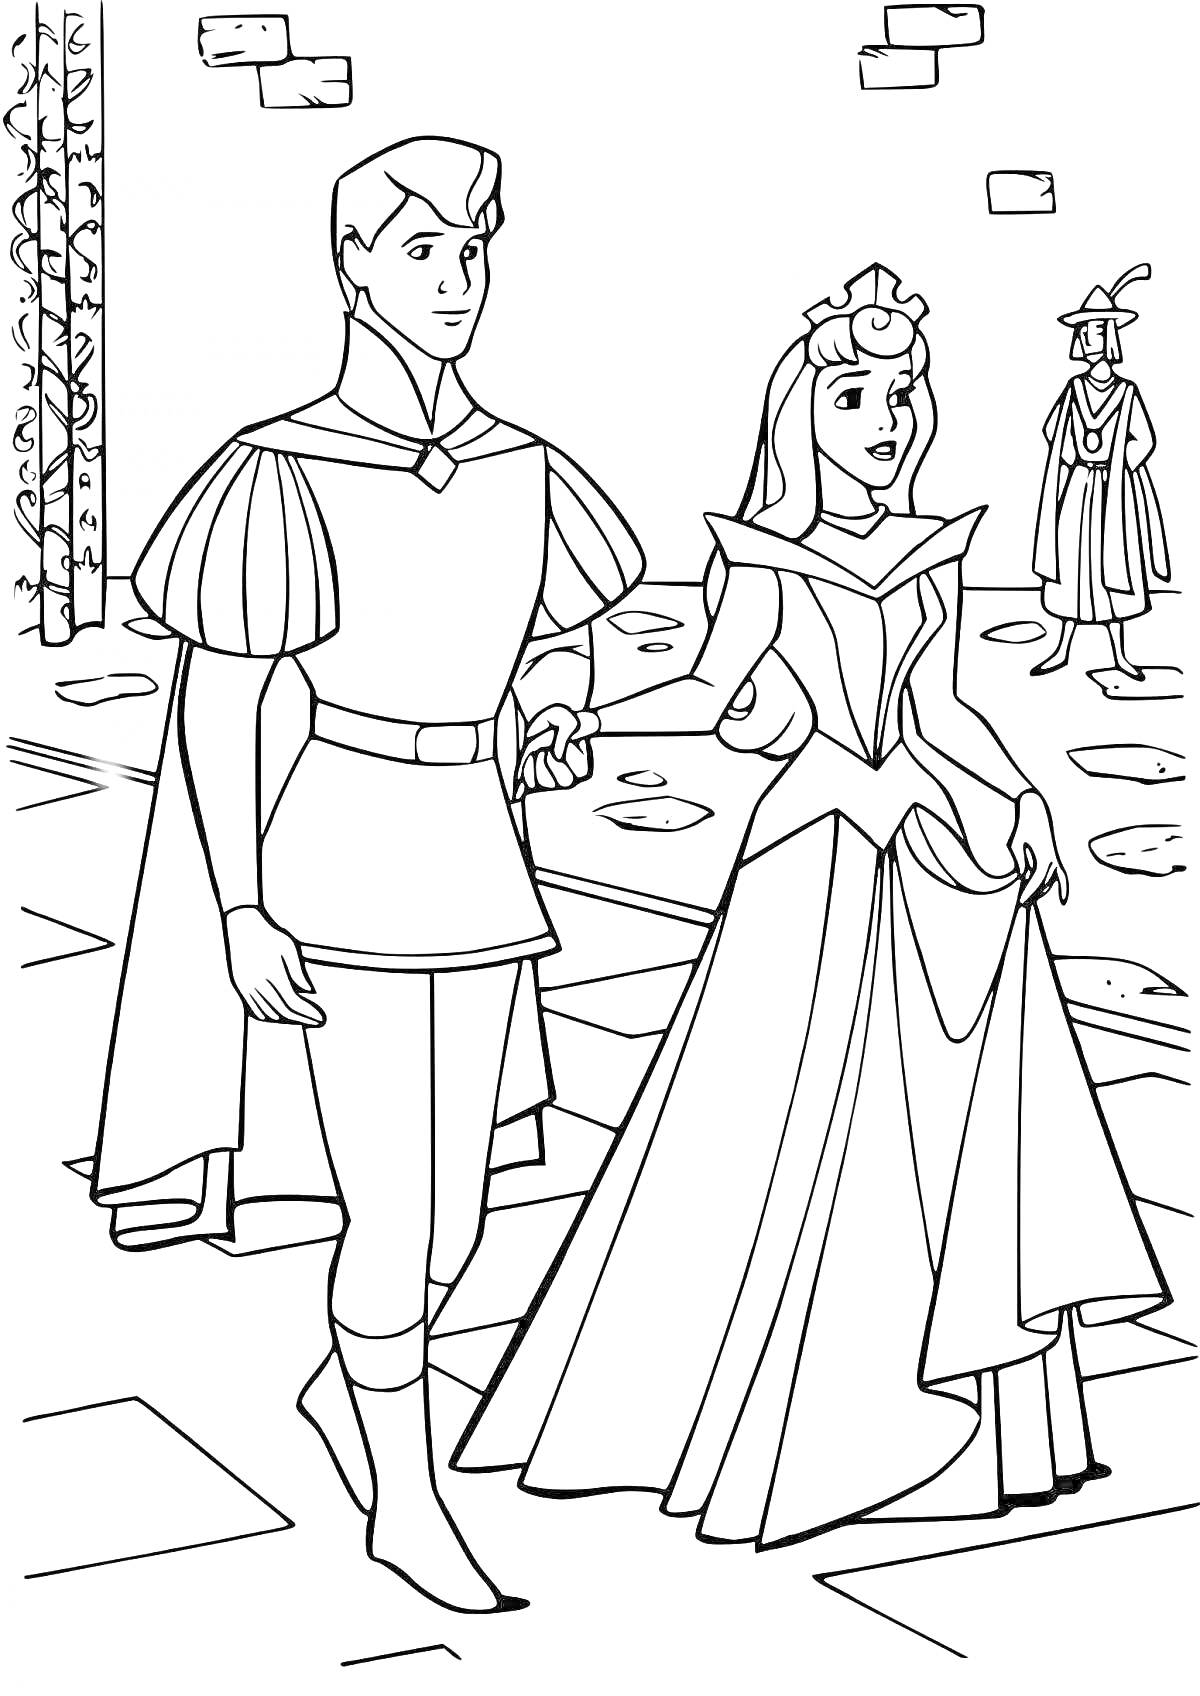 Раскраска Принц и принцесса гуляют по замку, вдалеке человек в шляпе